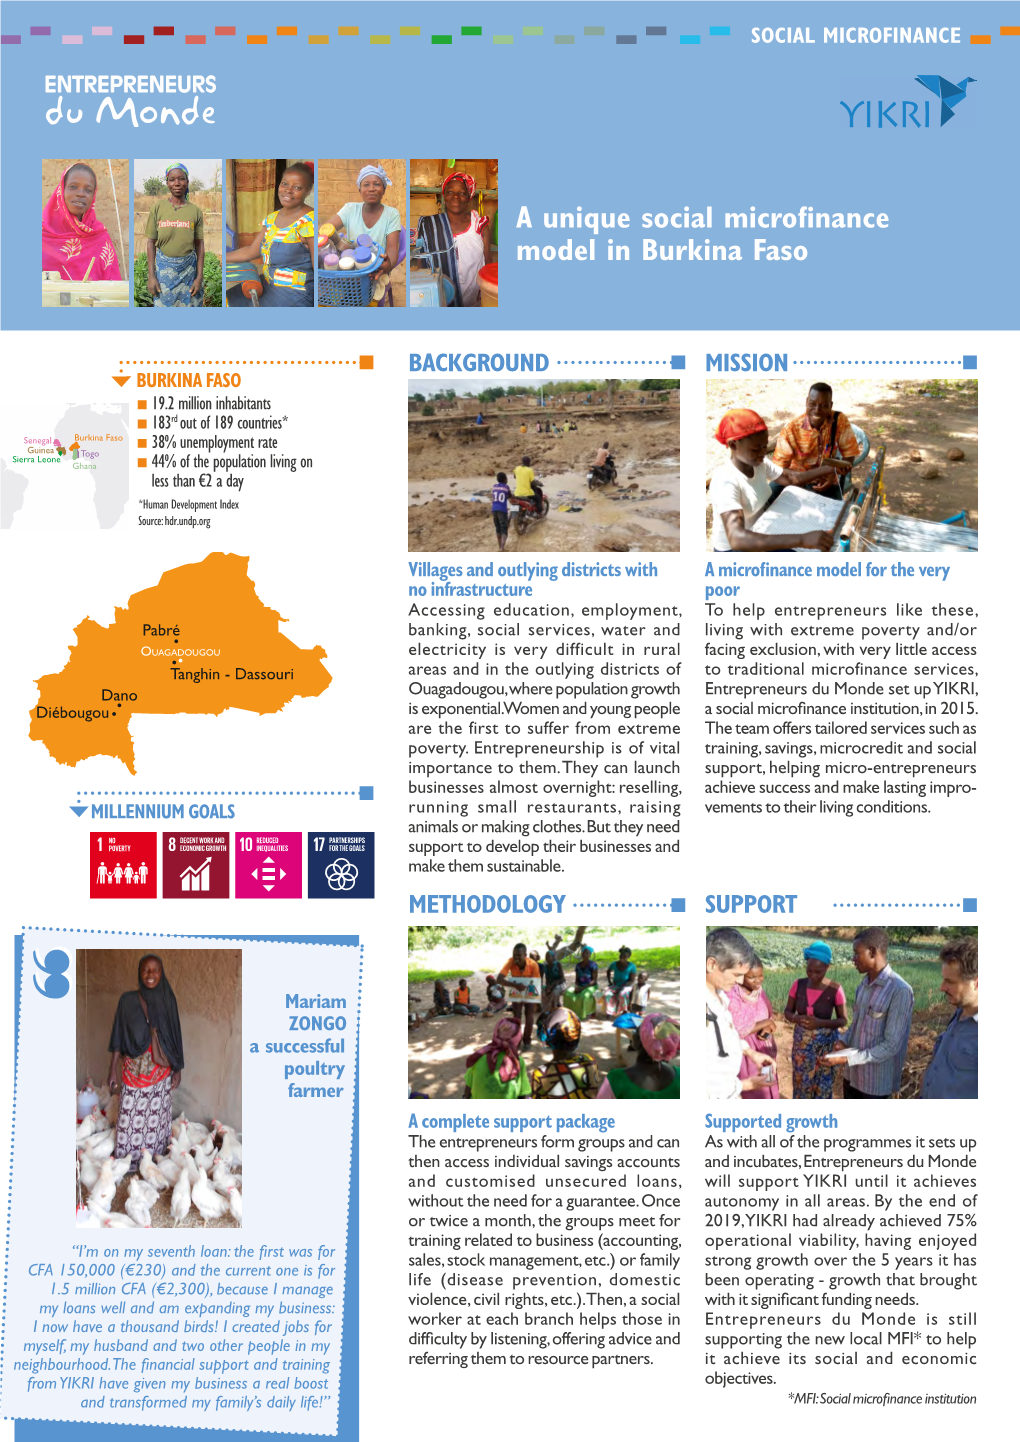 A Unique Social Microfinance Model in Burkina Faso